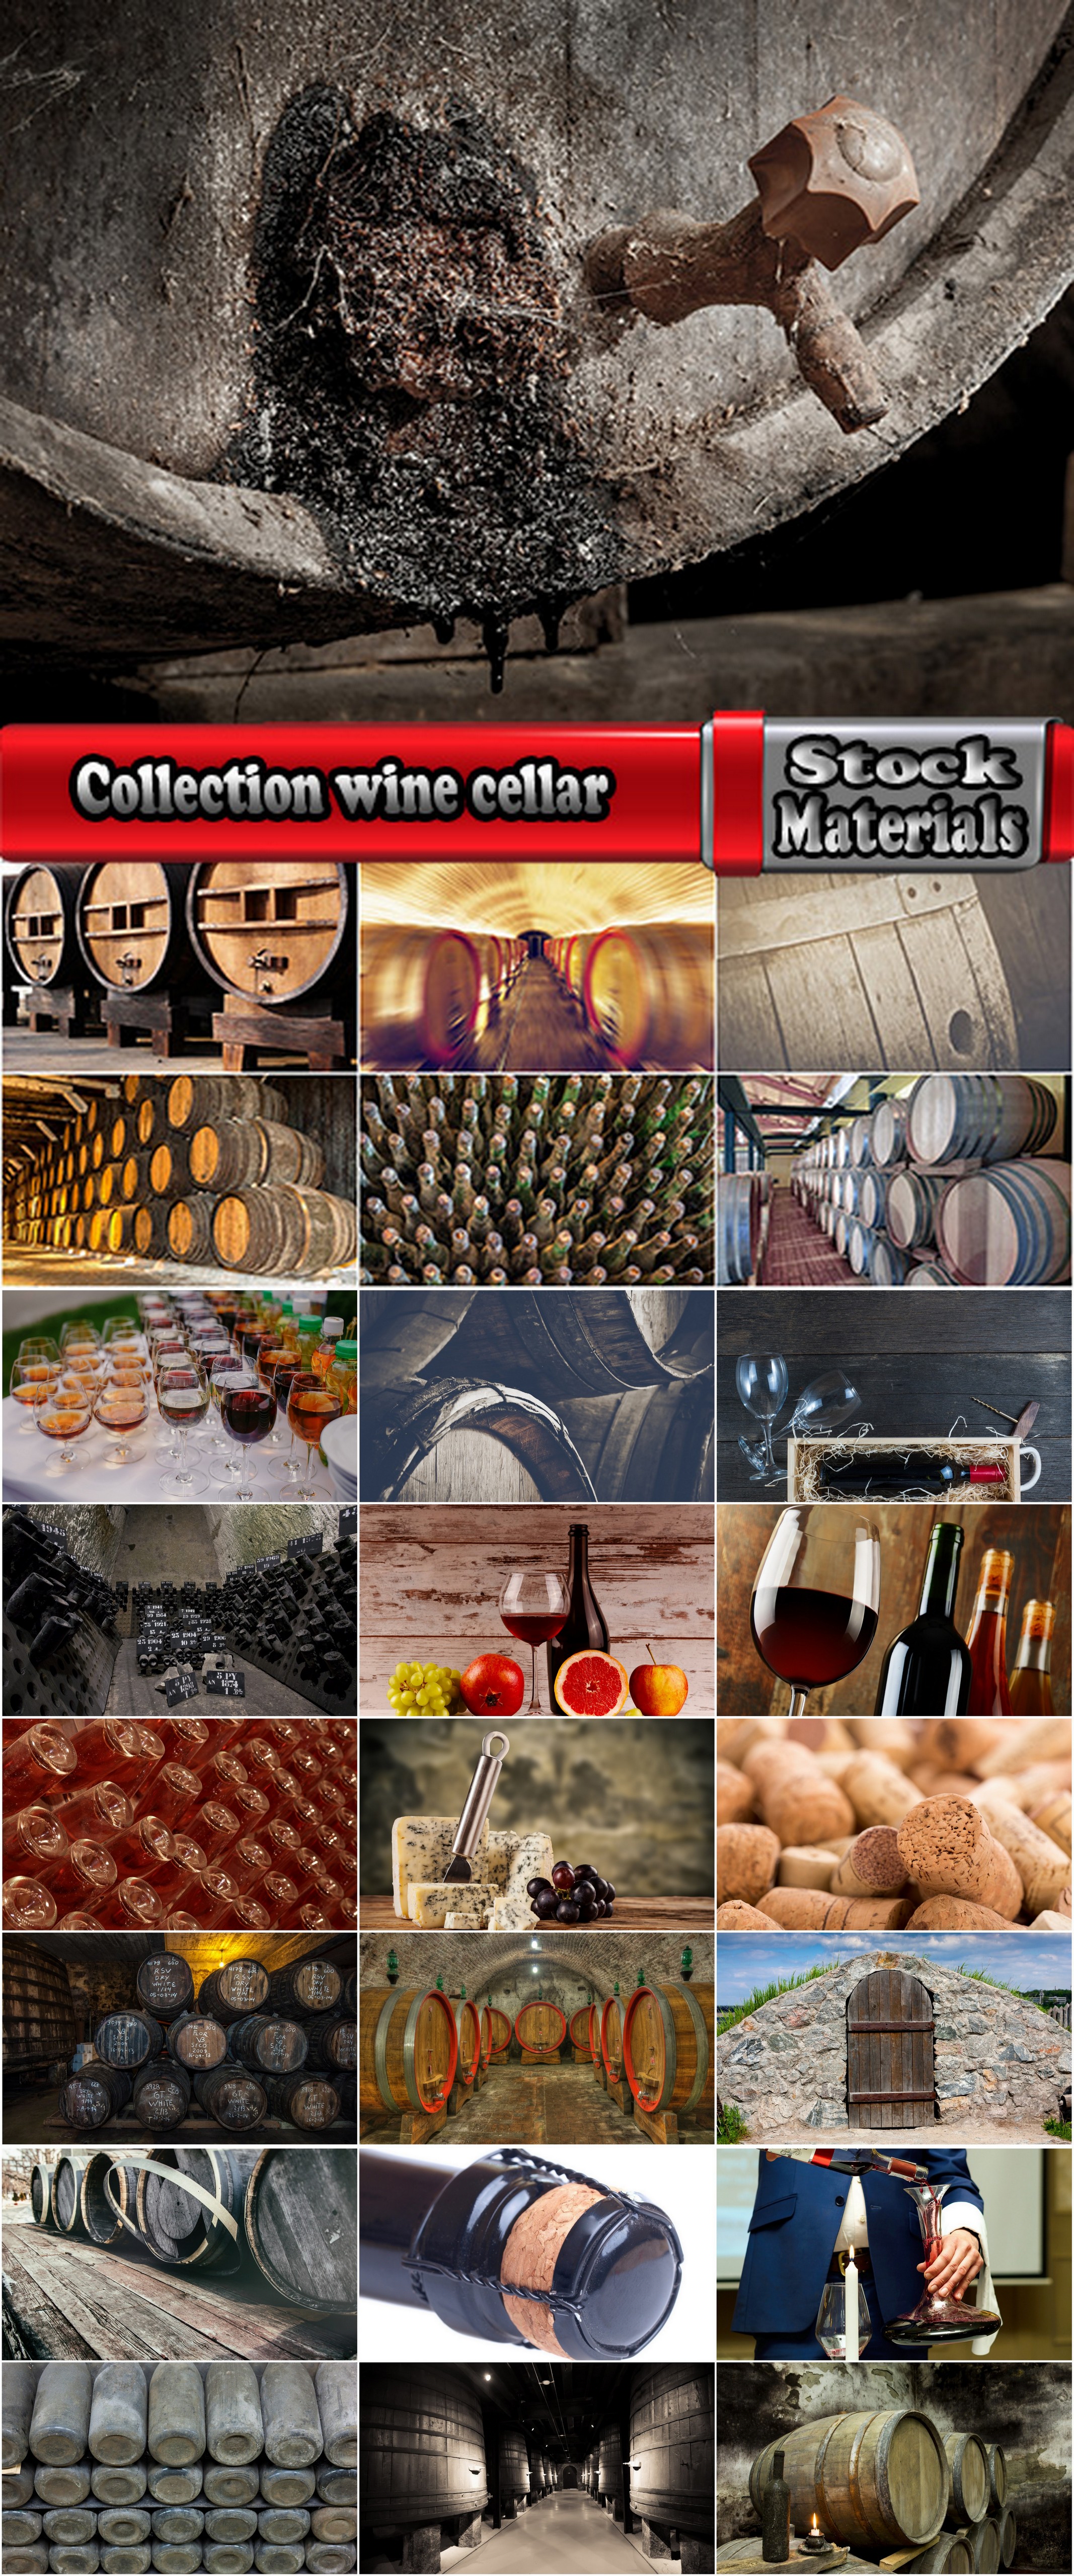 Collection wine cellar barrel grapes vintage bottles 25 HQ Jpeg